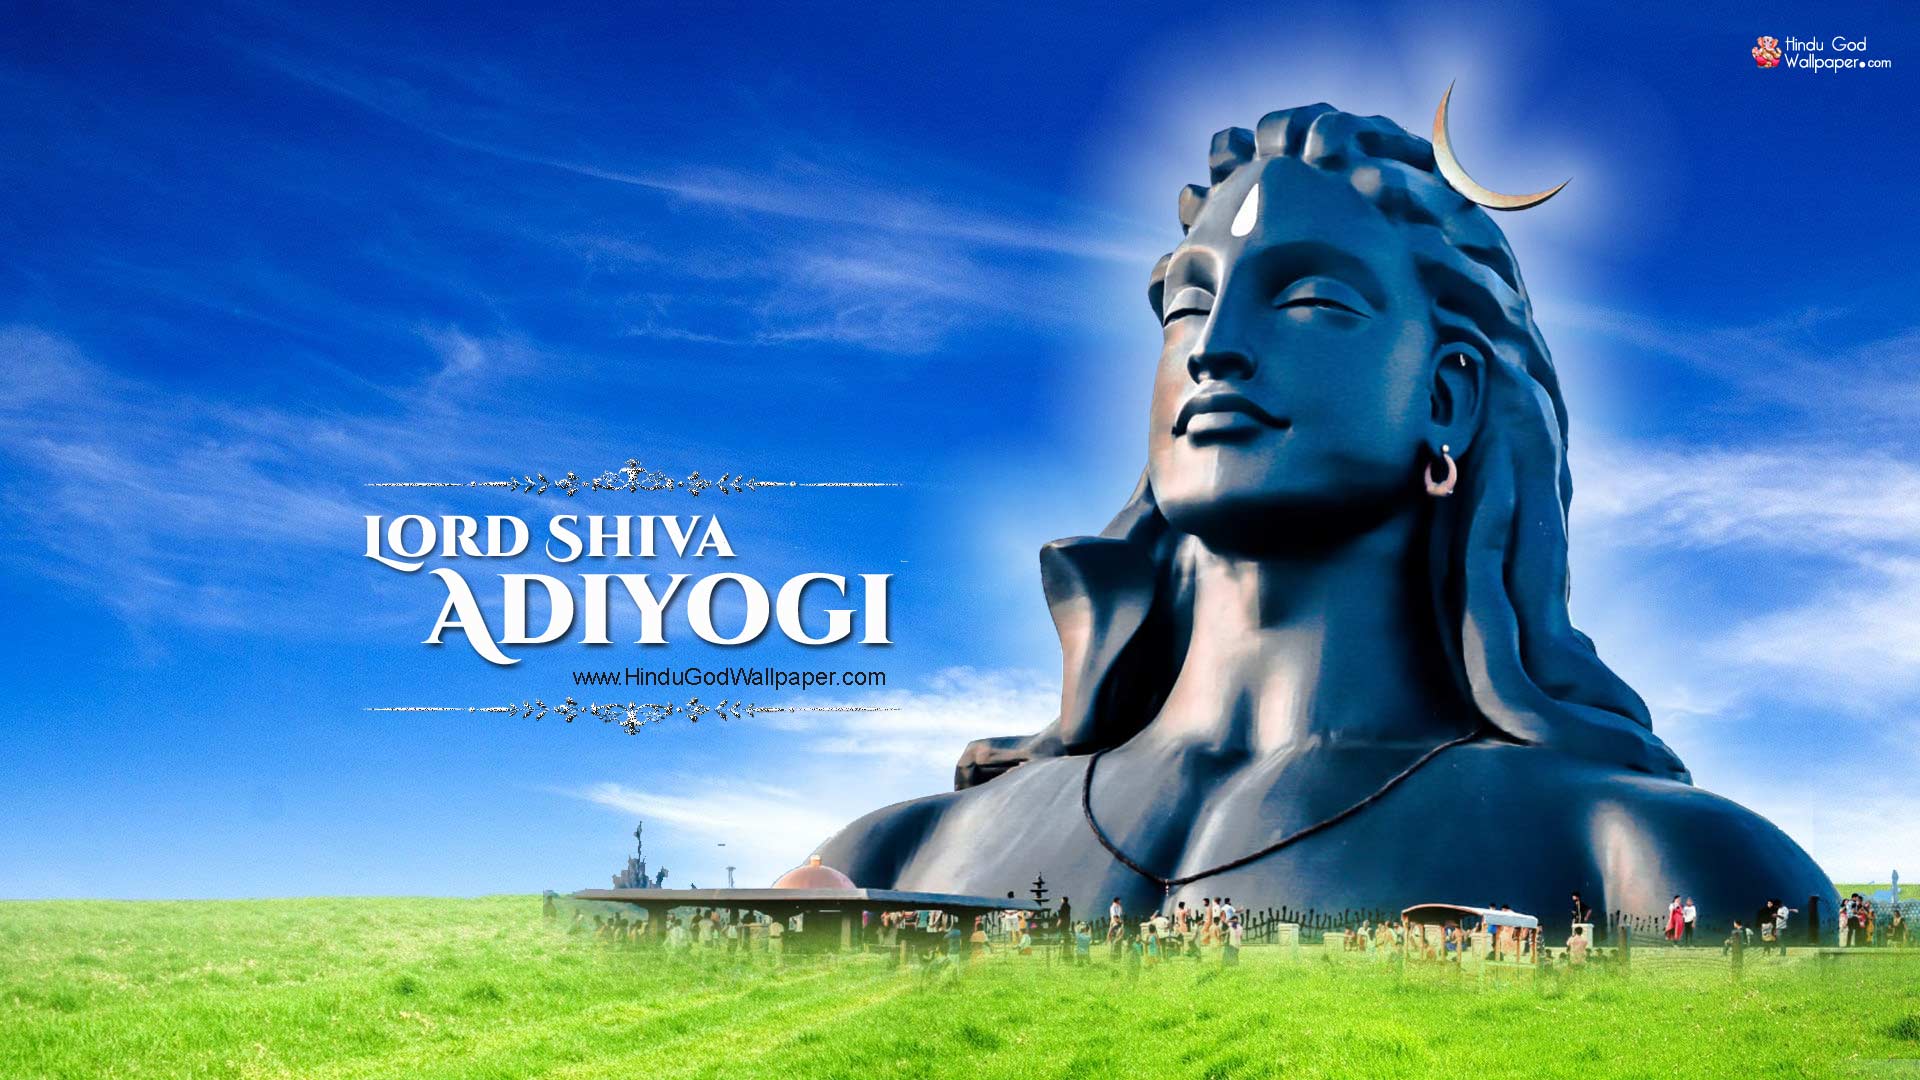 Hình nền HD 1920x1080 1080p Adiyogi.  Hình nền tượng Chúa Shiva